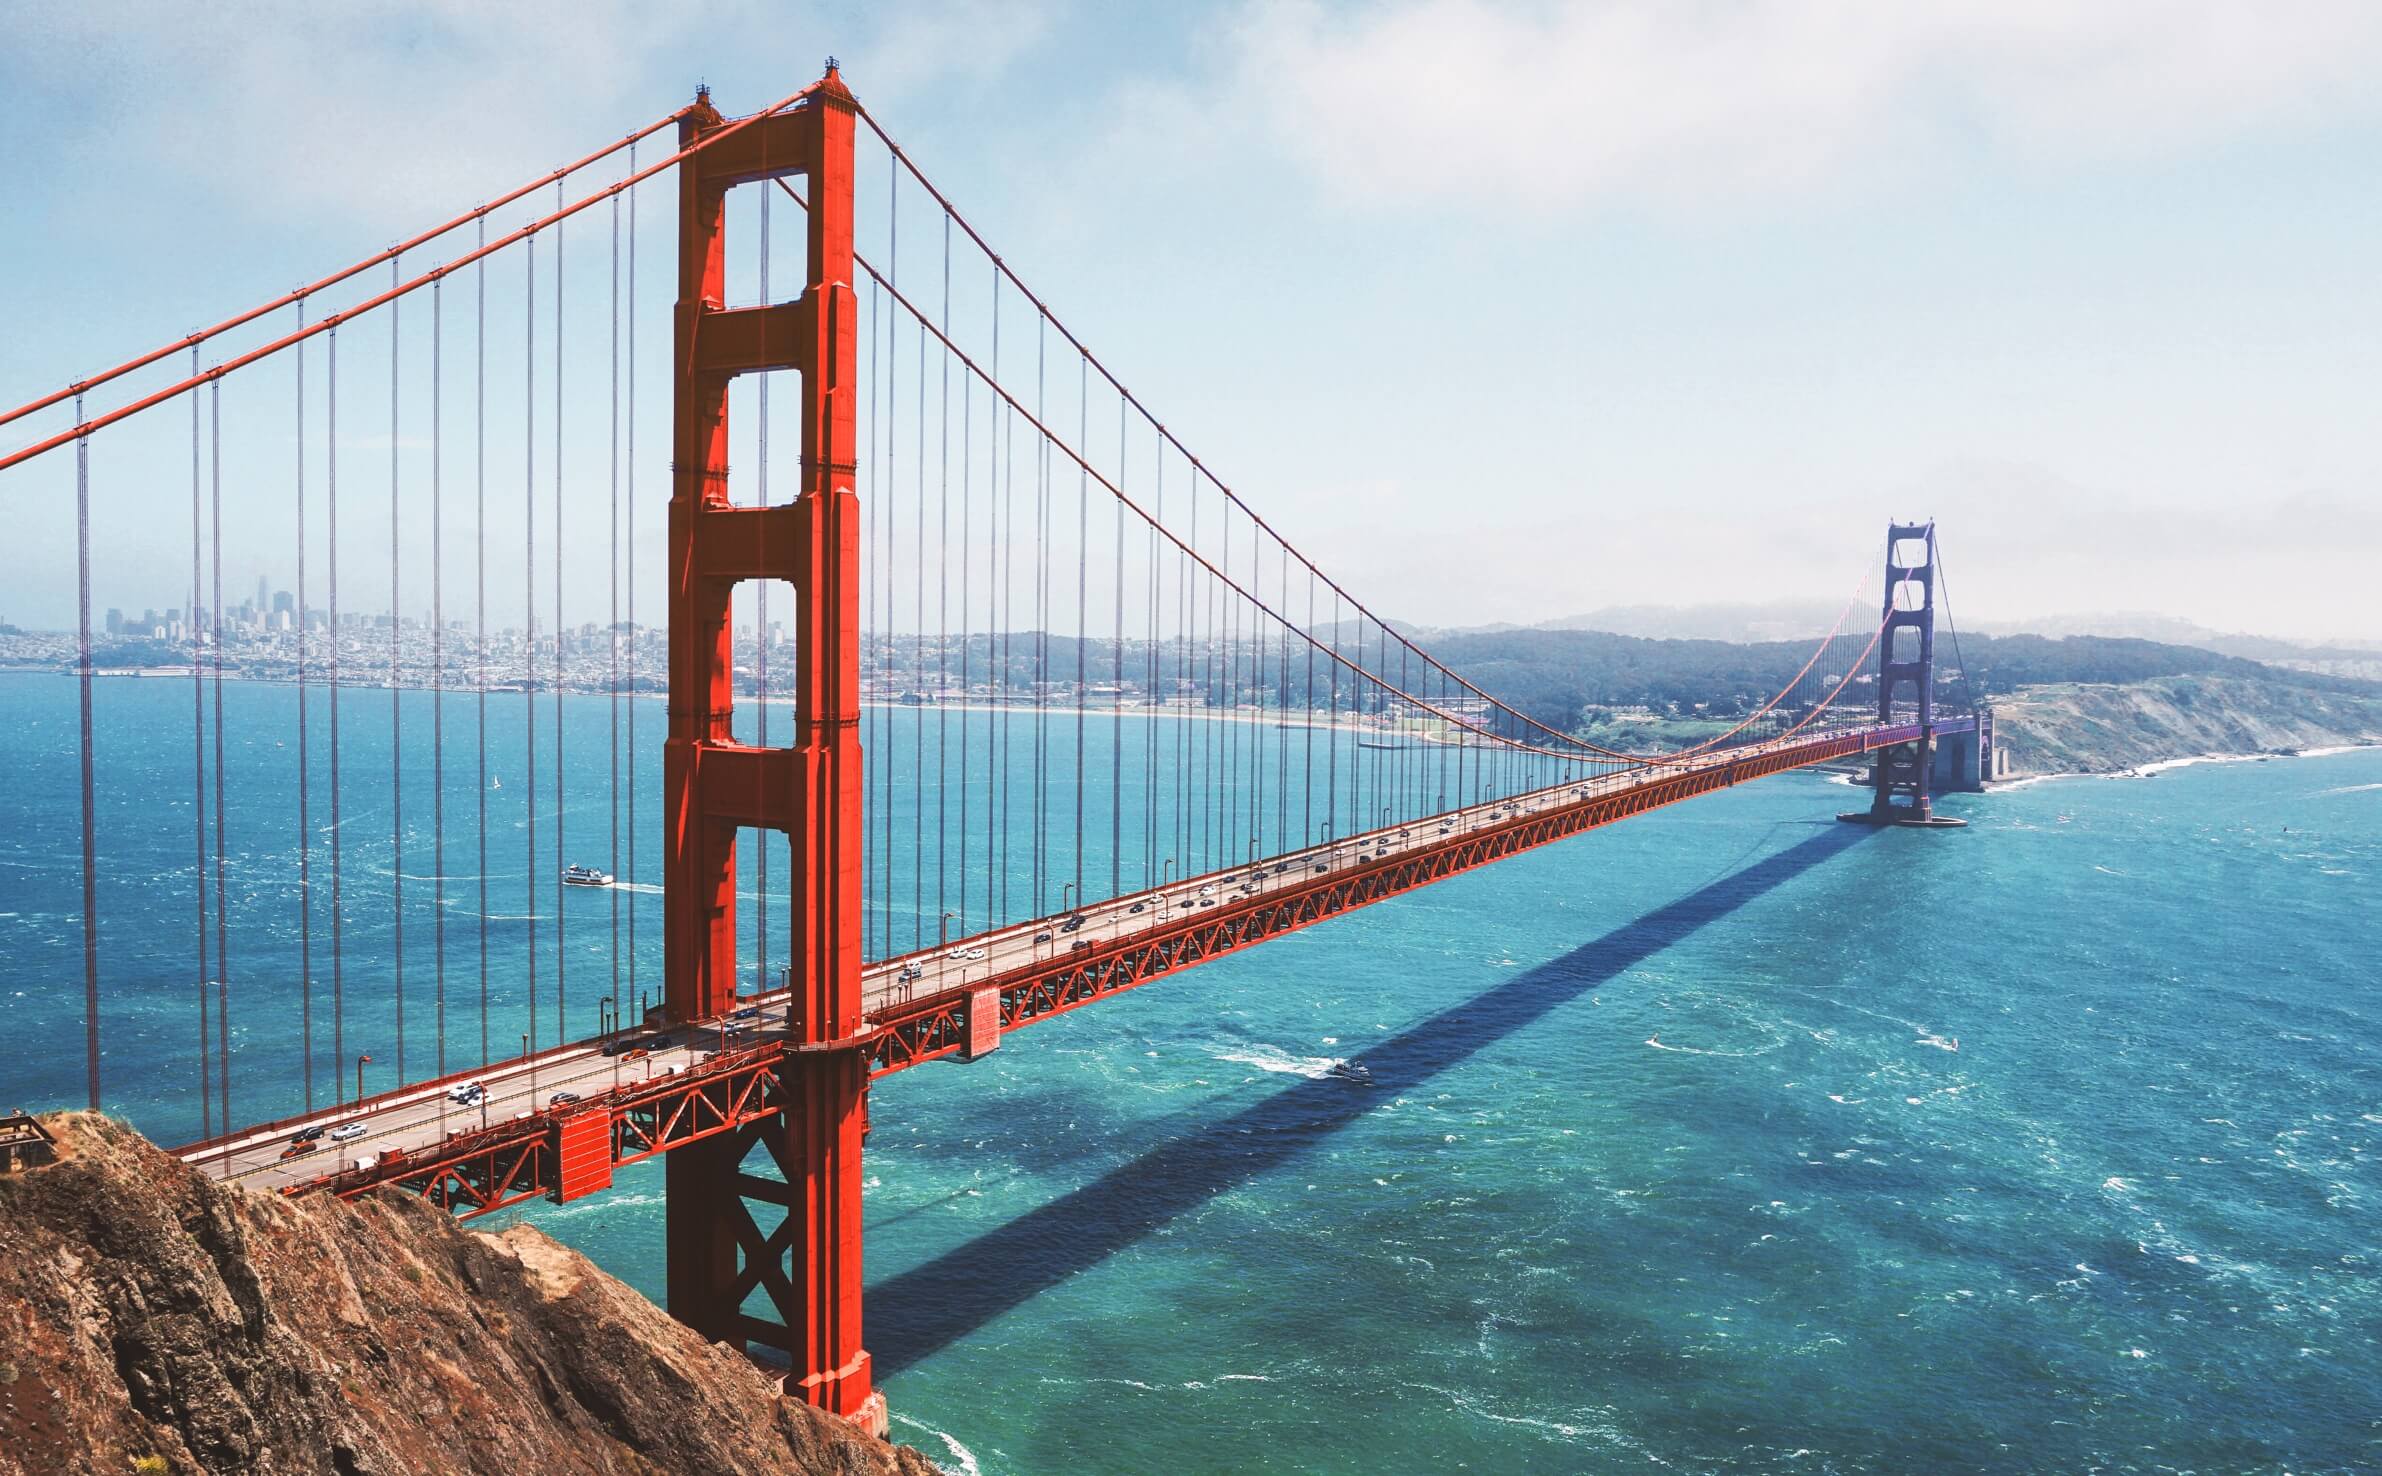 Golden Gate Bridge over the San Francisco Bay